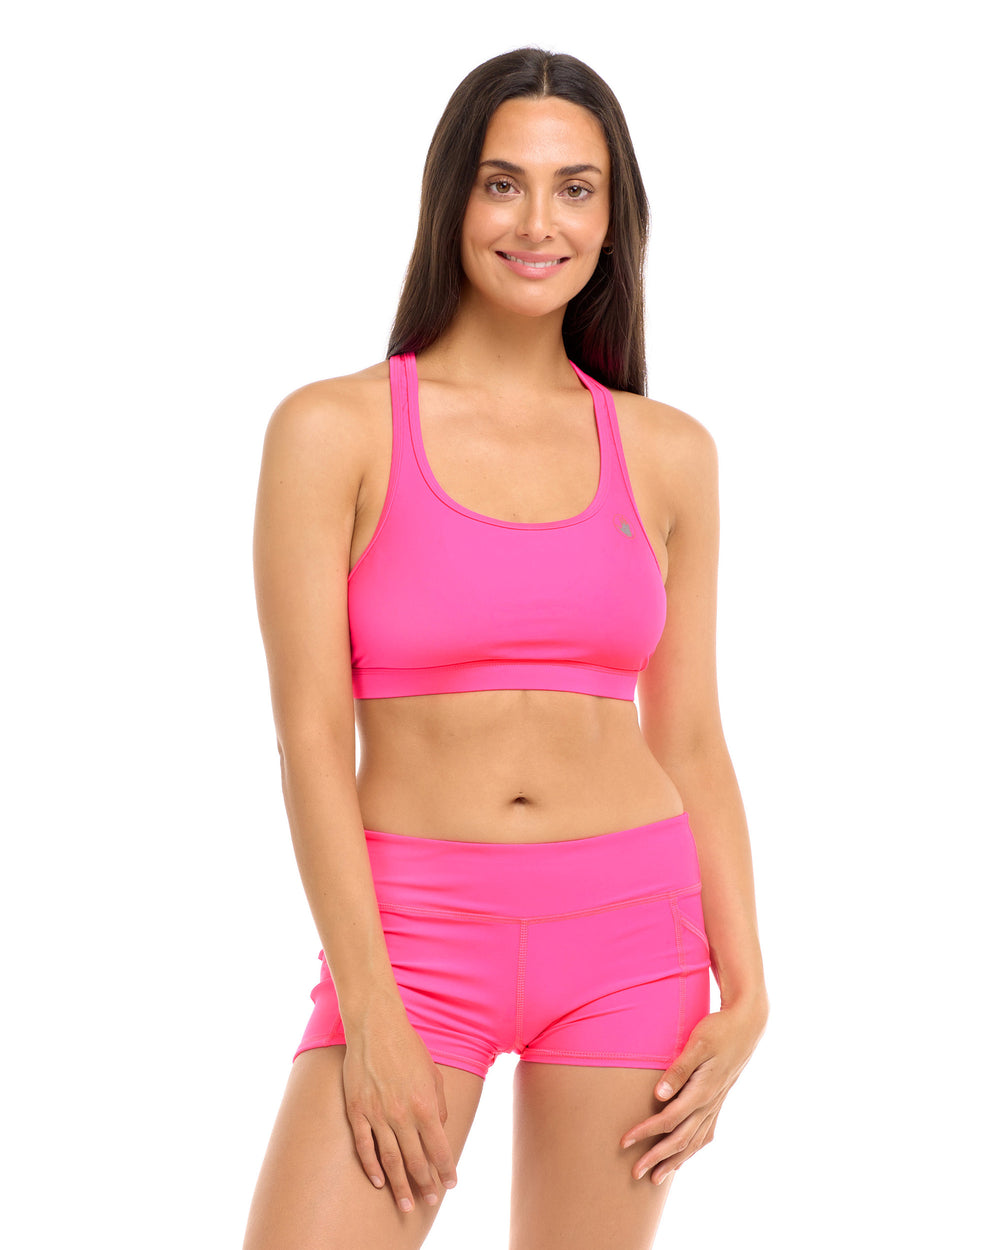 Workout Ready Sports Bra - Semi Proud Pink